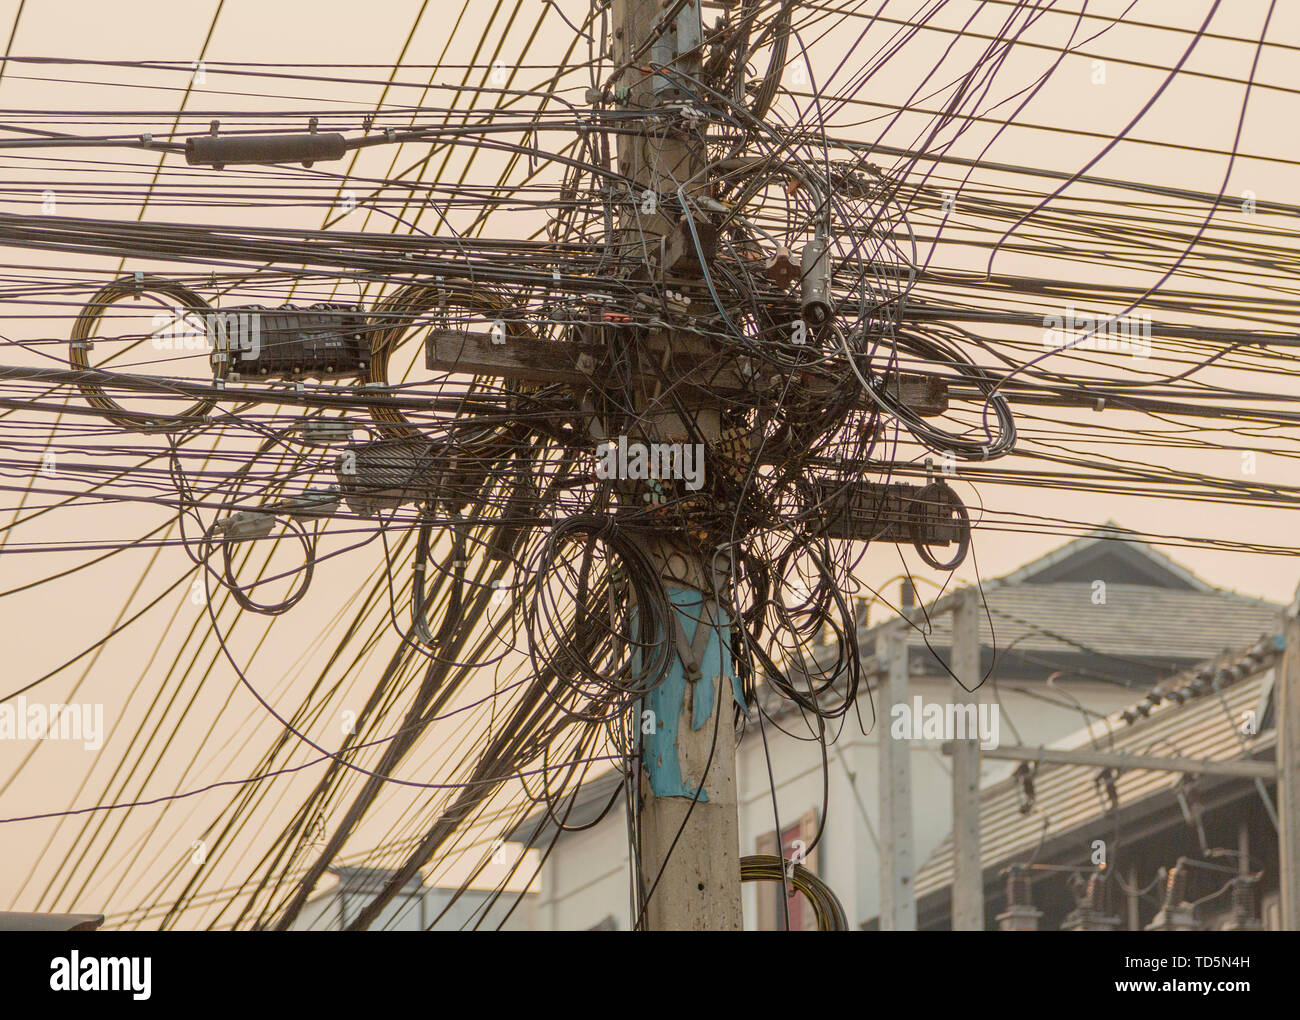 Tendido Eléctrico, cables de telefonía e Internet forman un nido de ratas  Fotografía de stock - Alamy